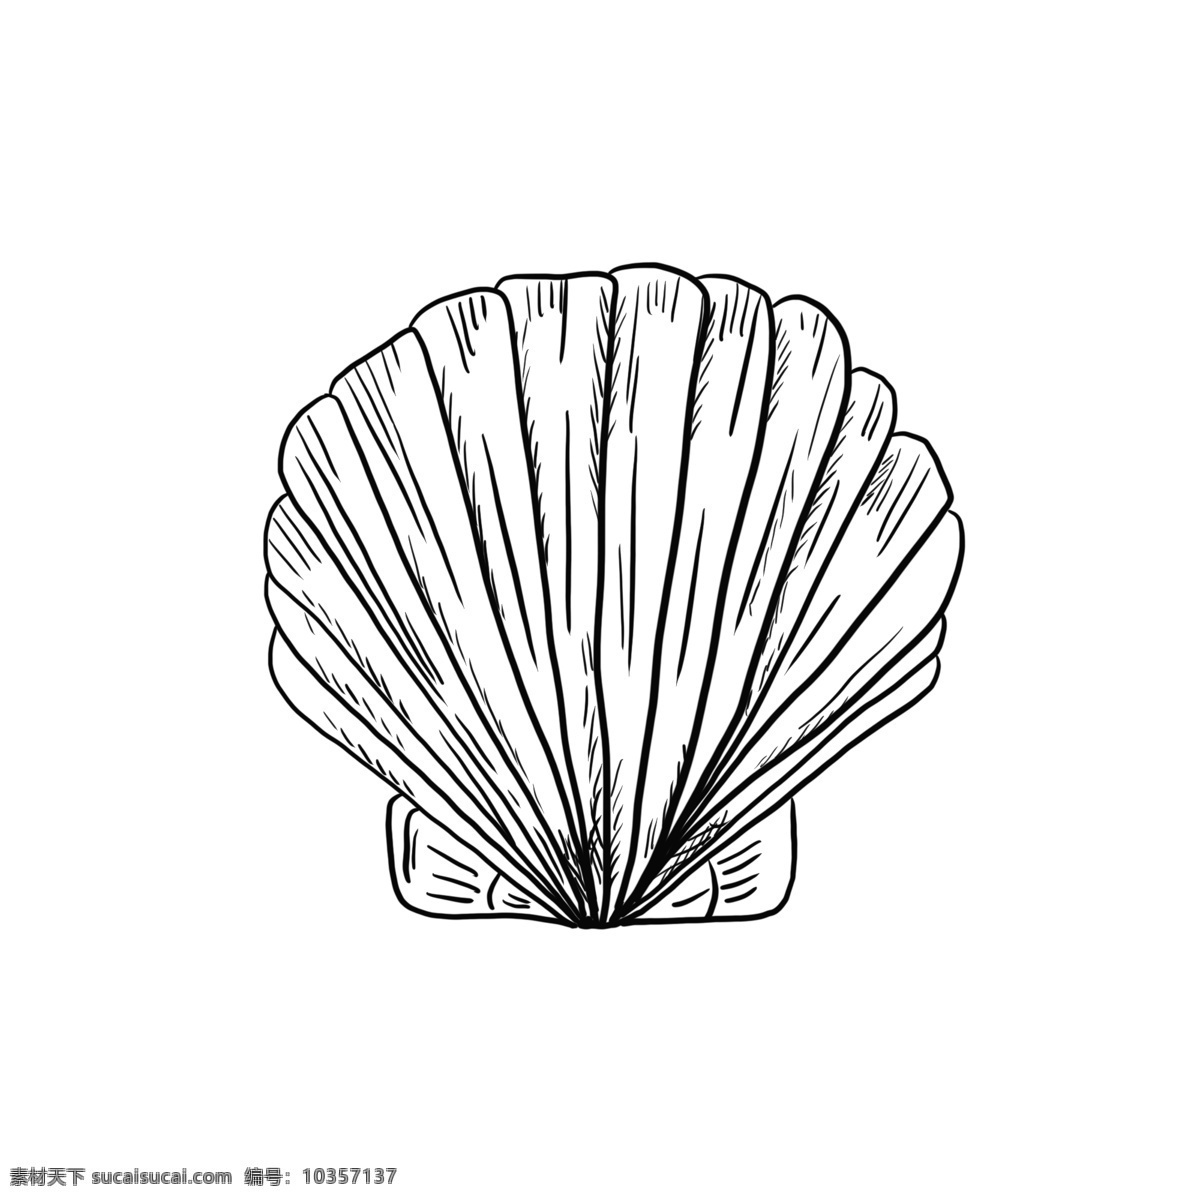 海鲜 贝壳 手绘 线 稿 元素 壳类 海洋 线稿 黑白 珍珠贝壳 卡通 装饰 海鲜食品 海洋食物